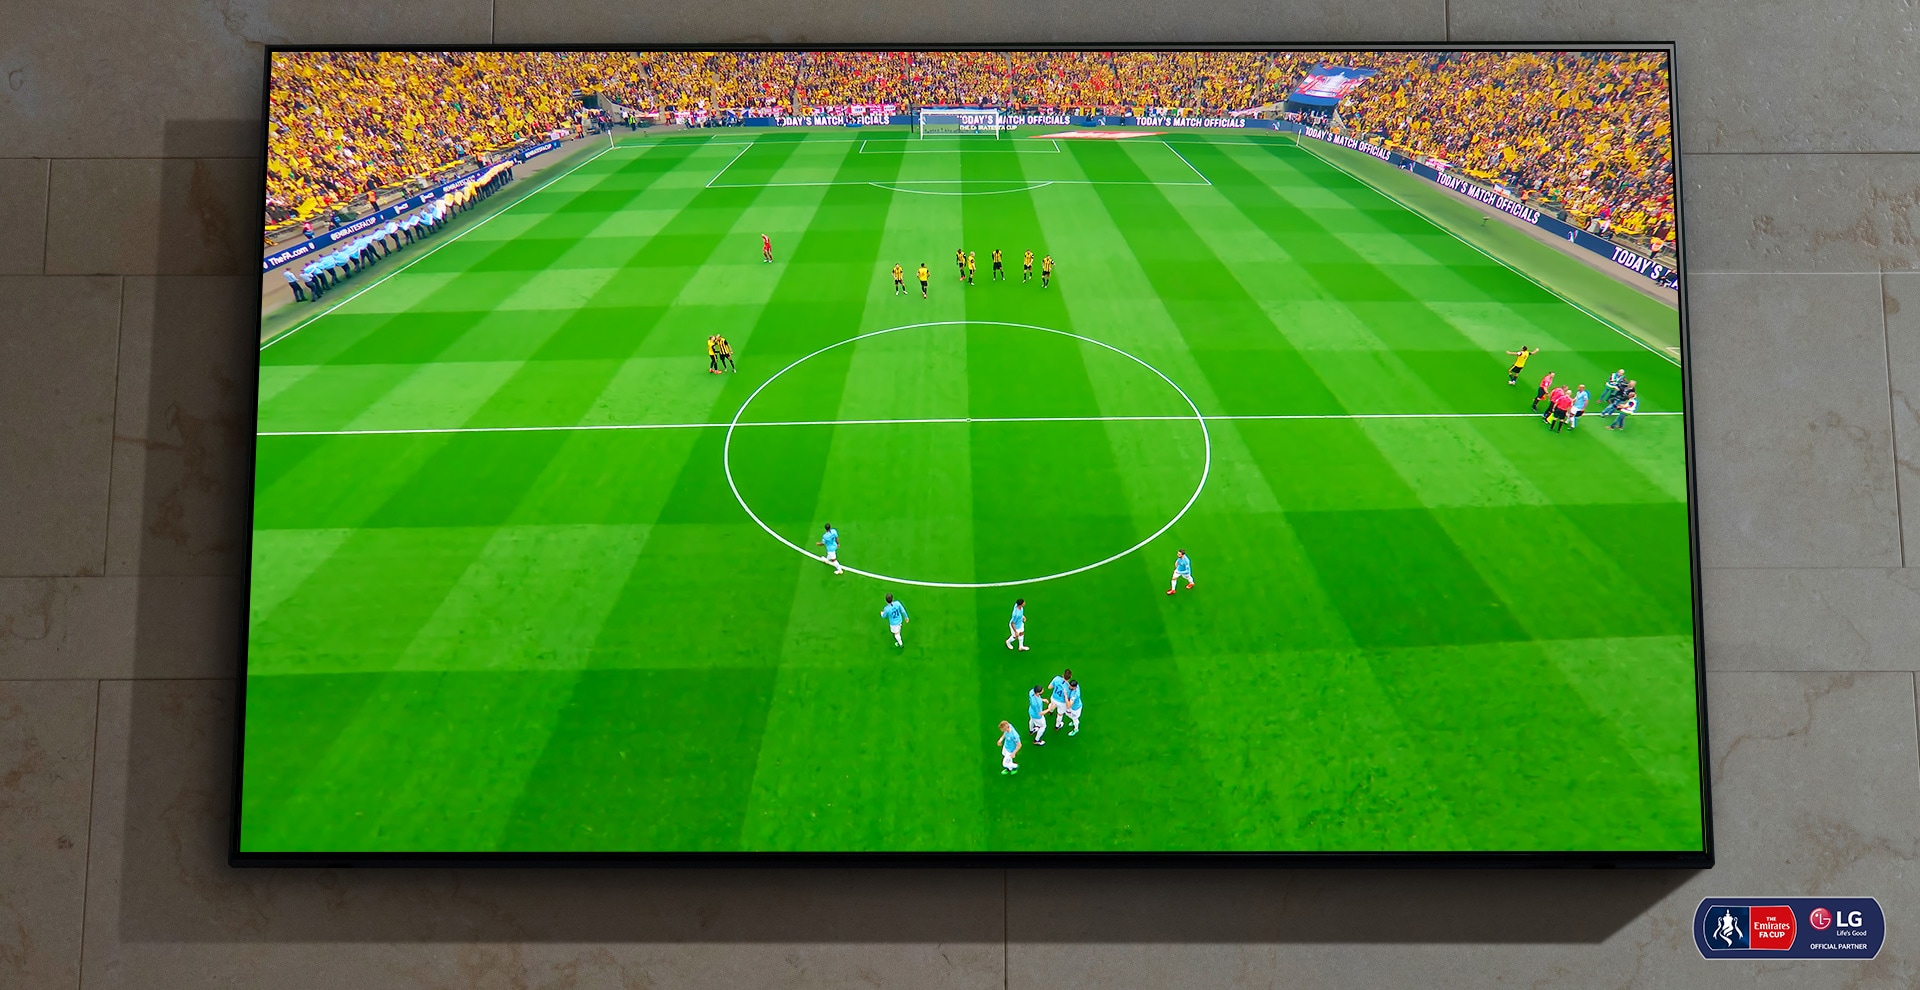 Een NanoCell-tv aan de wand. Het scherm toont een voetbalwedstrijd die op het punt staat om te beginnen.